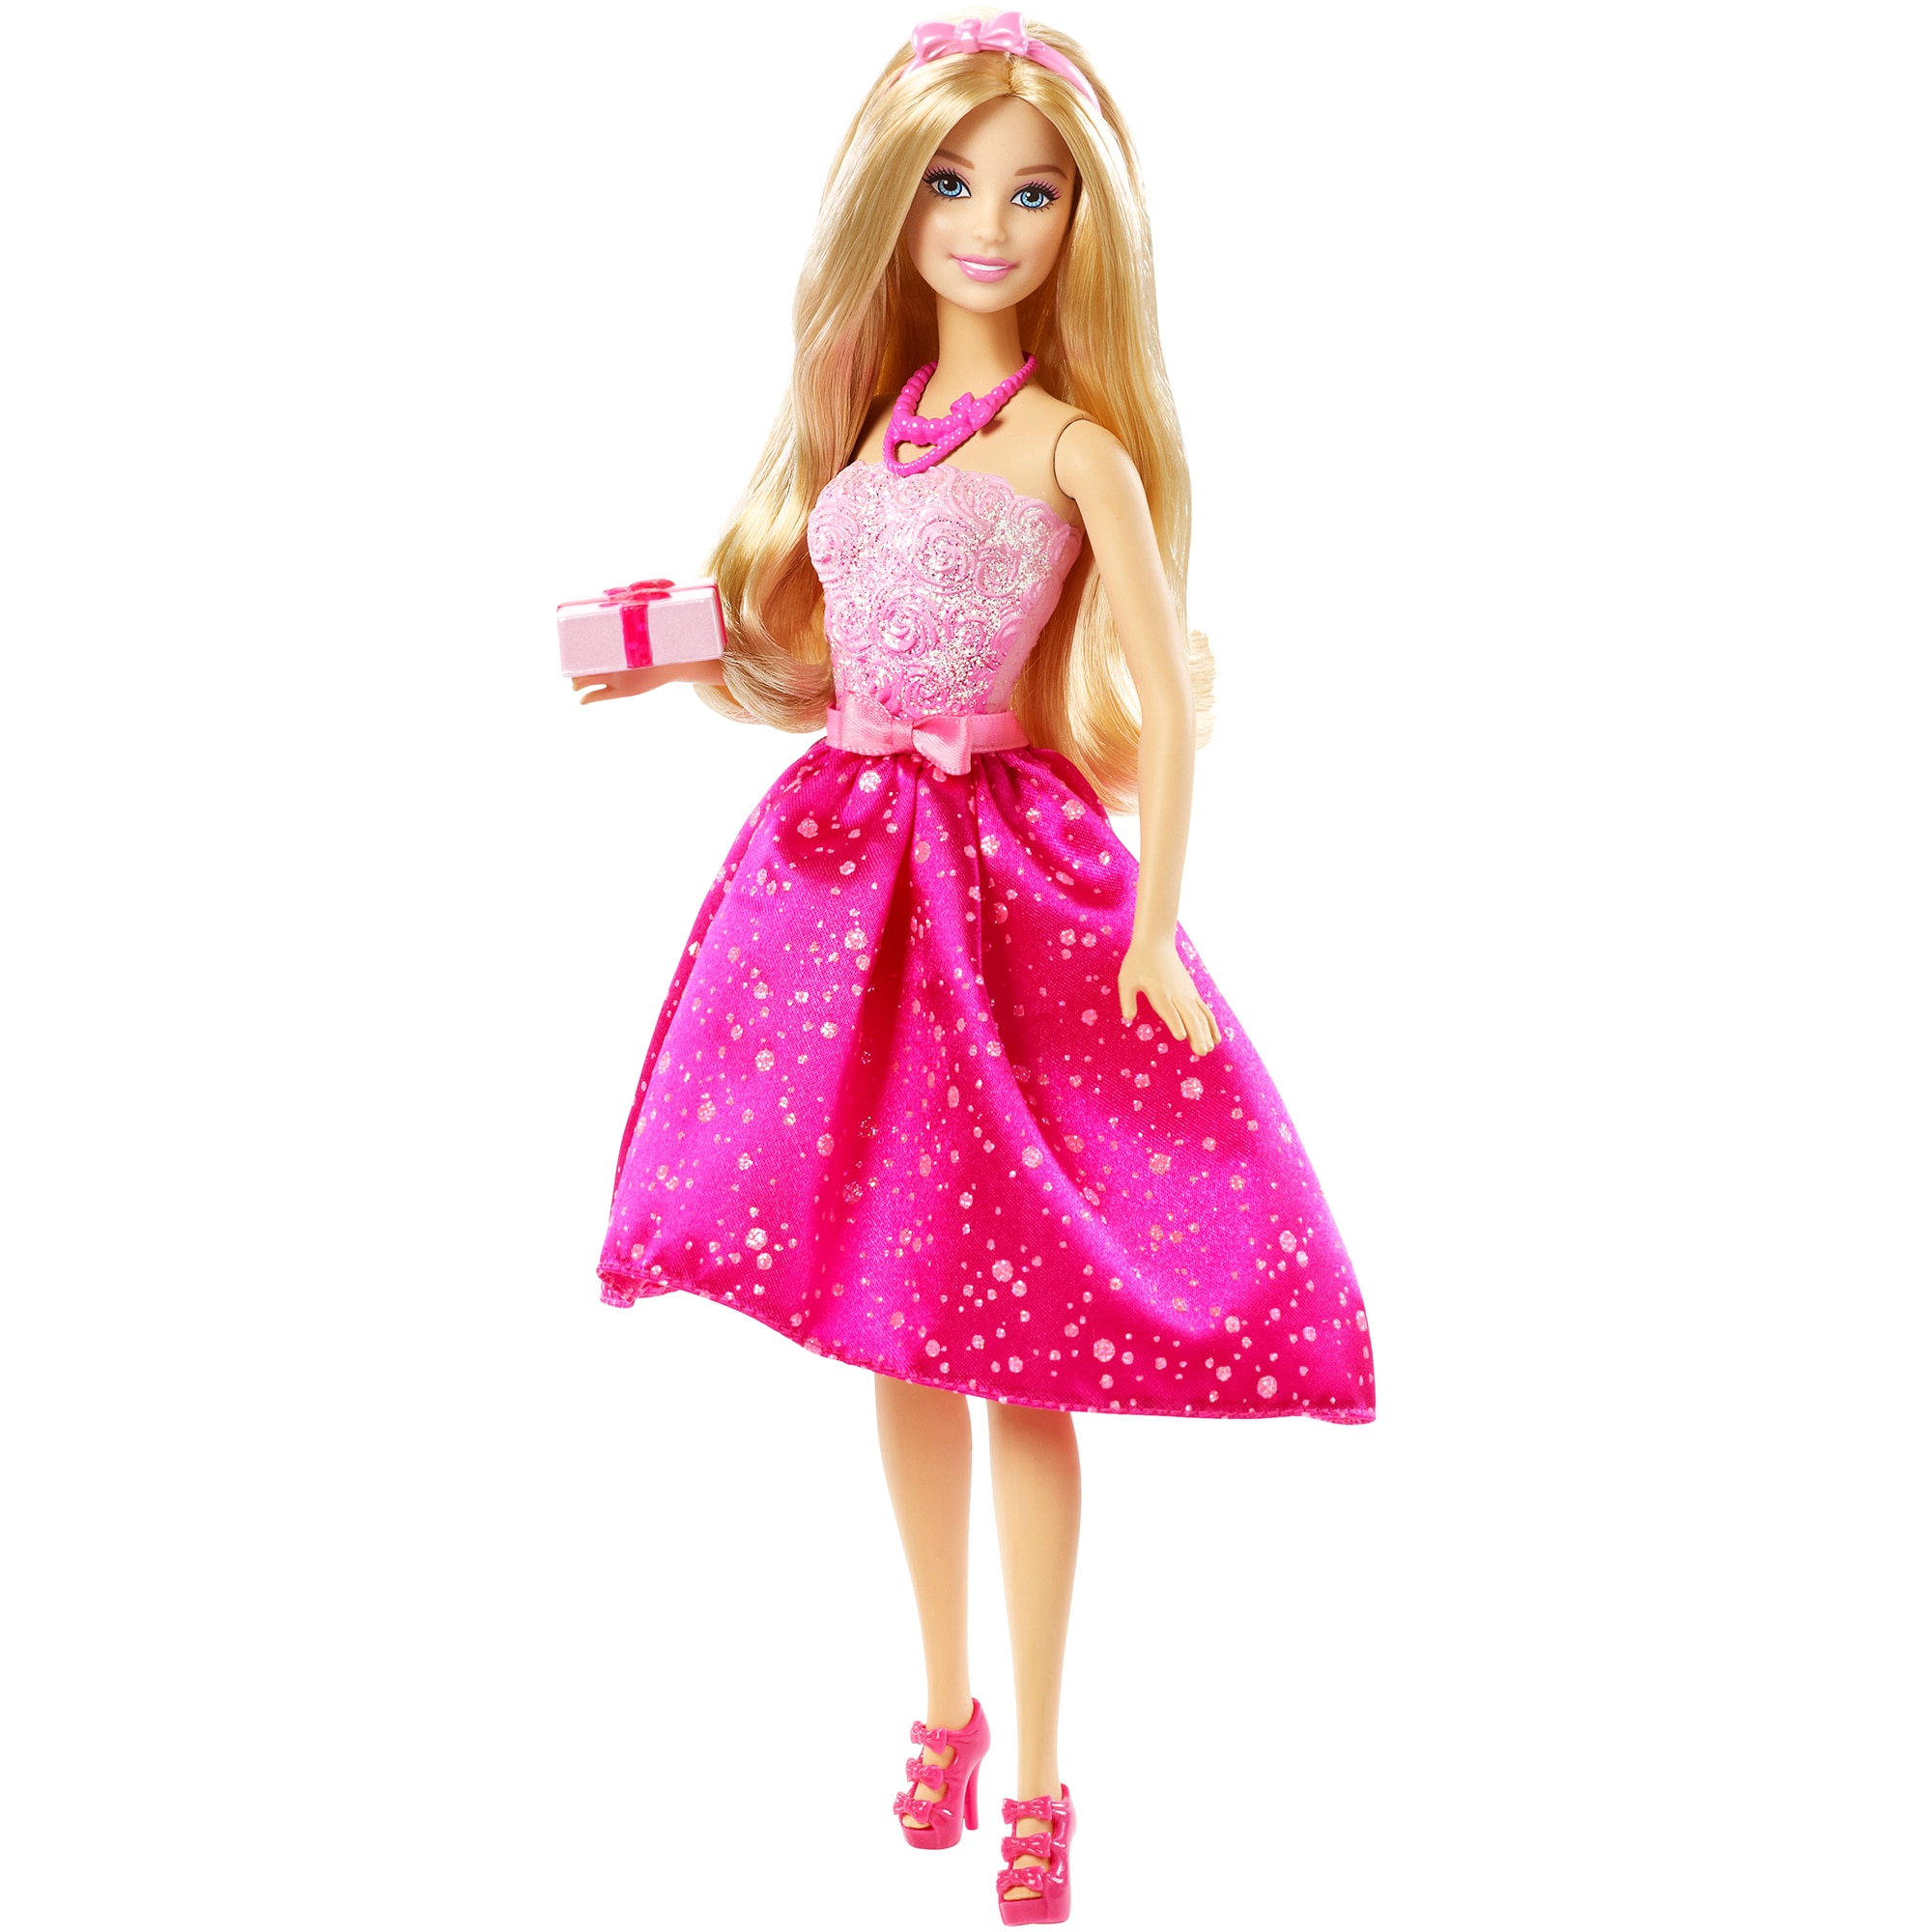 Игрушка барби купить. Куклы Barbie Mattel. День рождения куклы Барби. Кукла Barbie у нас - девочка, 30 см, x8428. День рождения куклы Барби (Barbie Day).